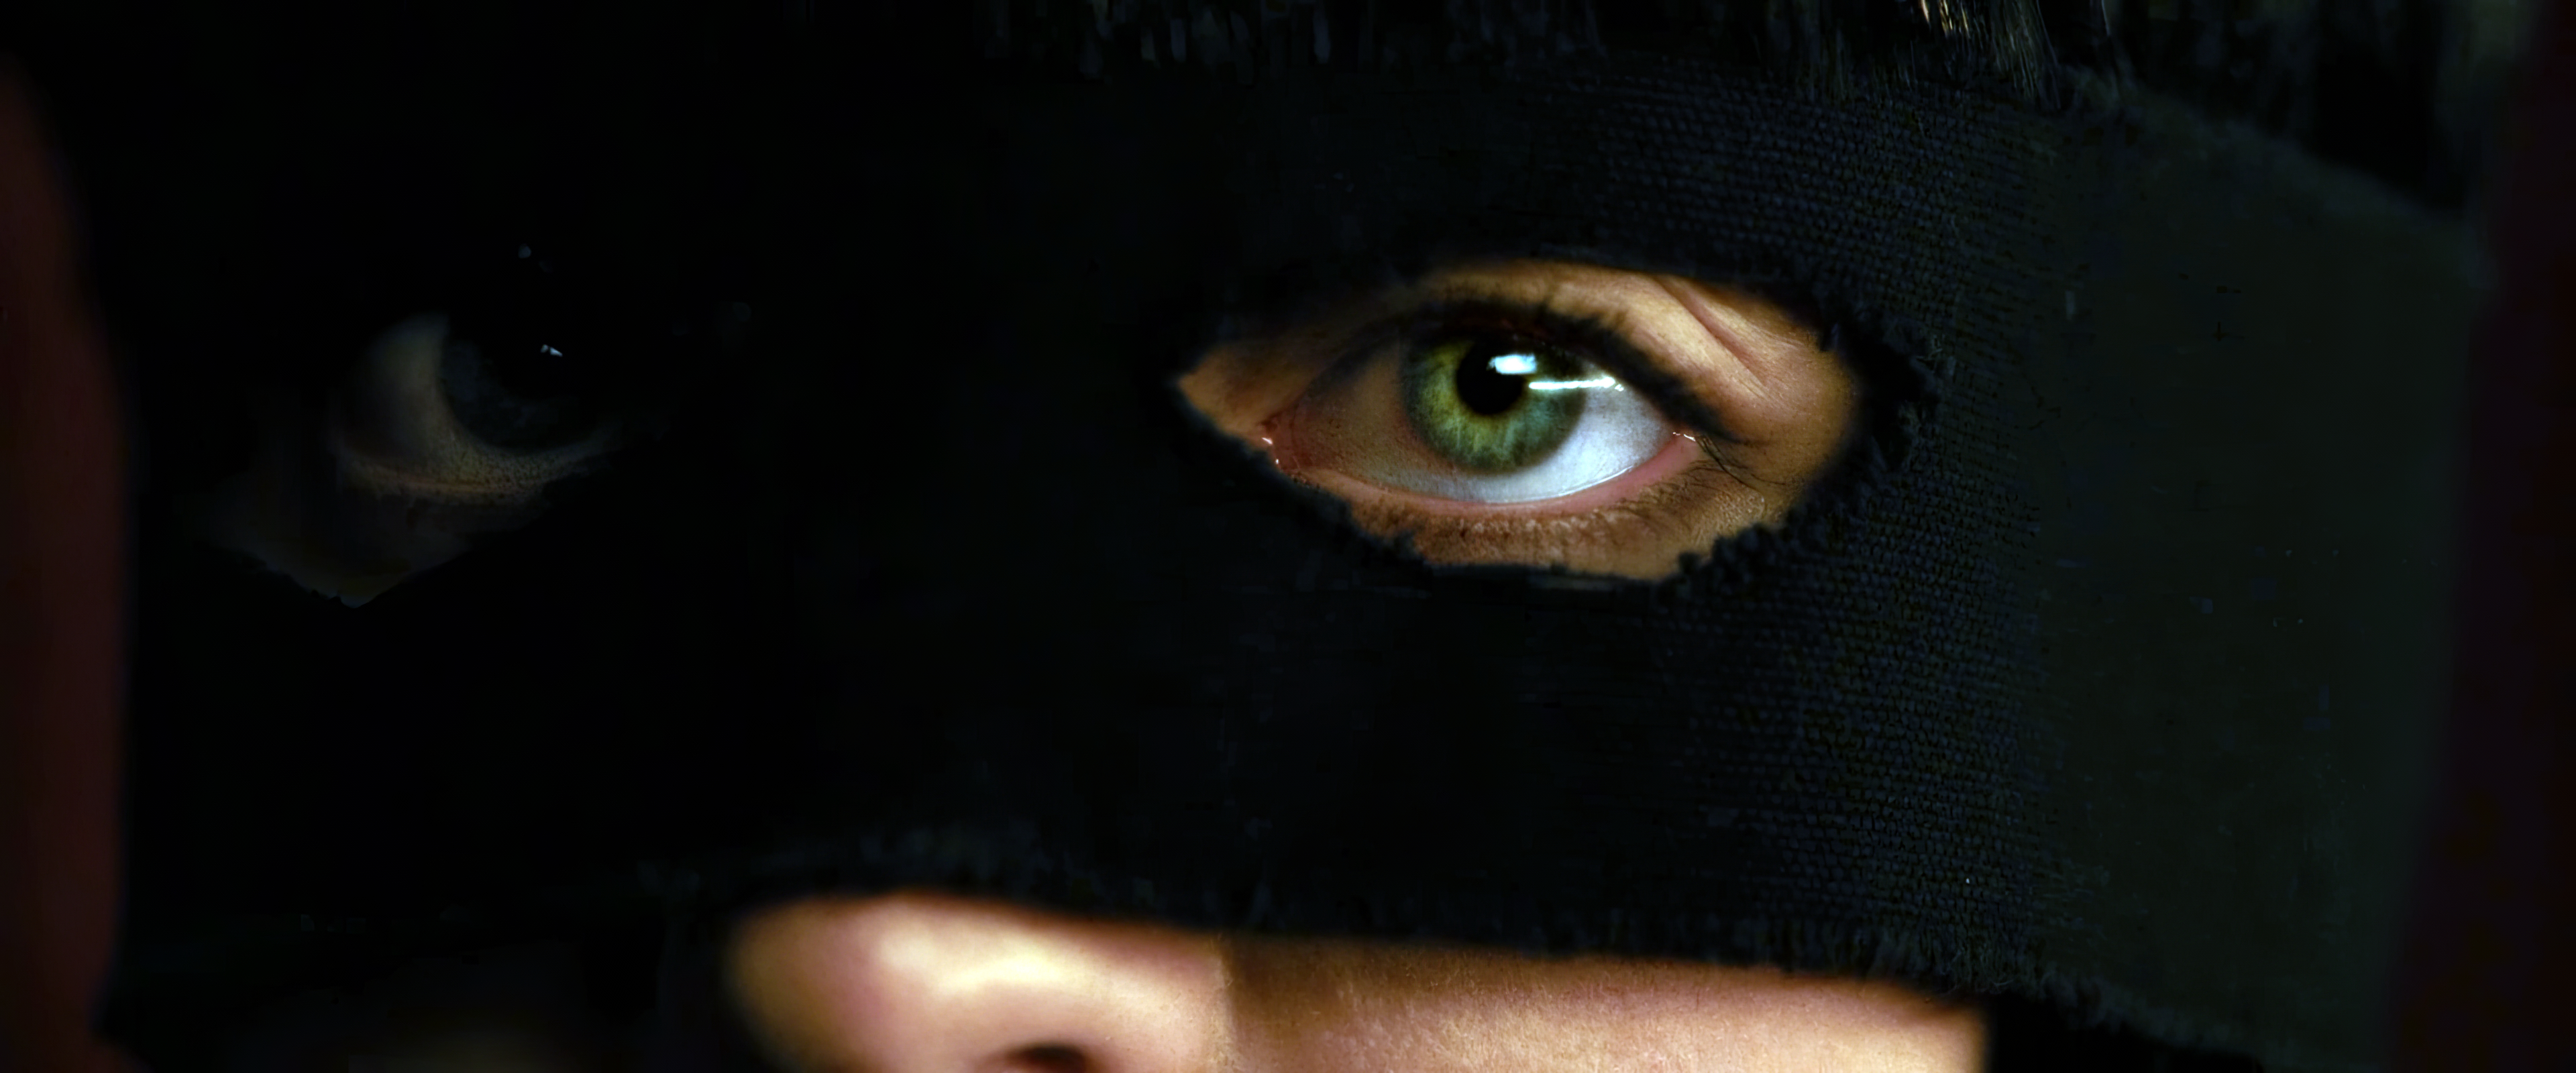 Преступница в чёрной маске с красивыми глазами, Бандитская маска, Девушка в балаклаве